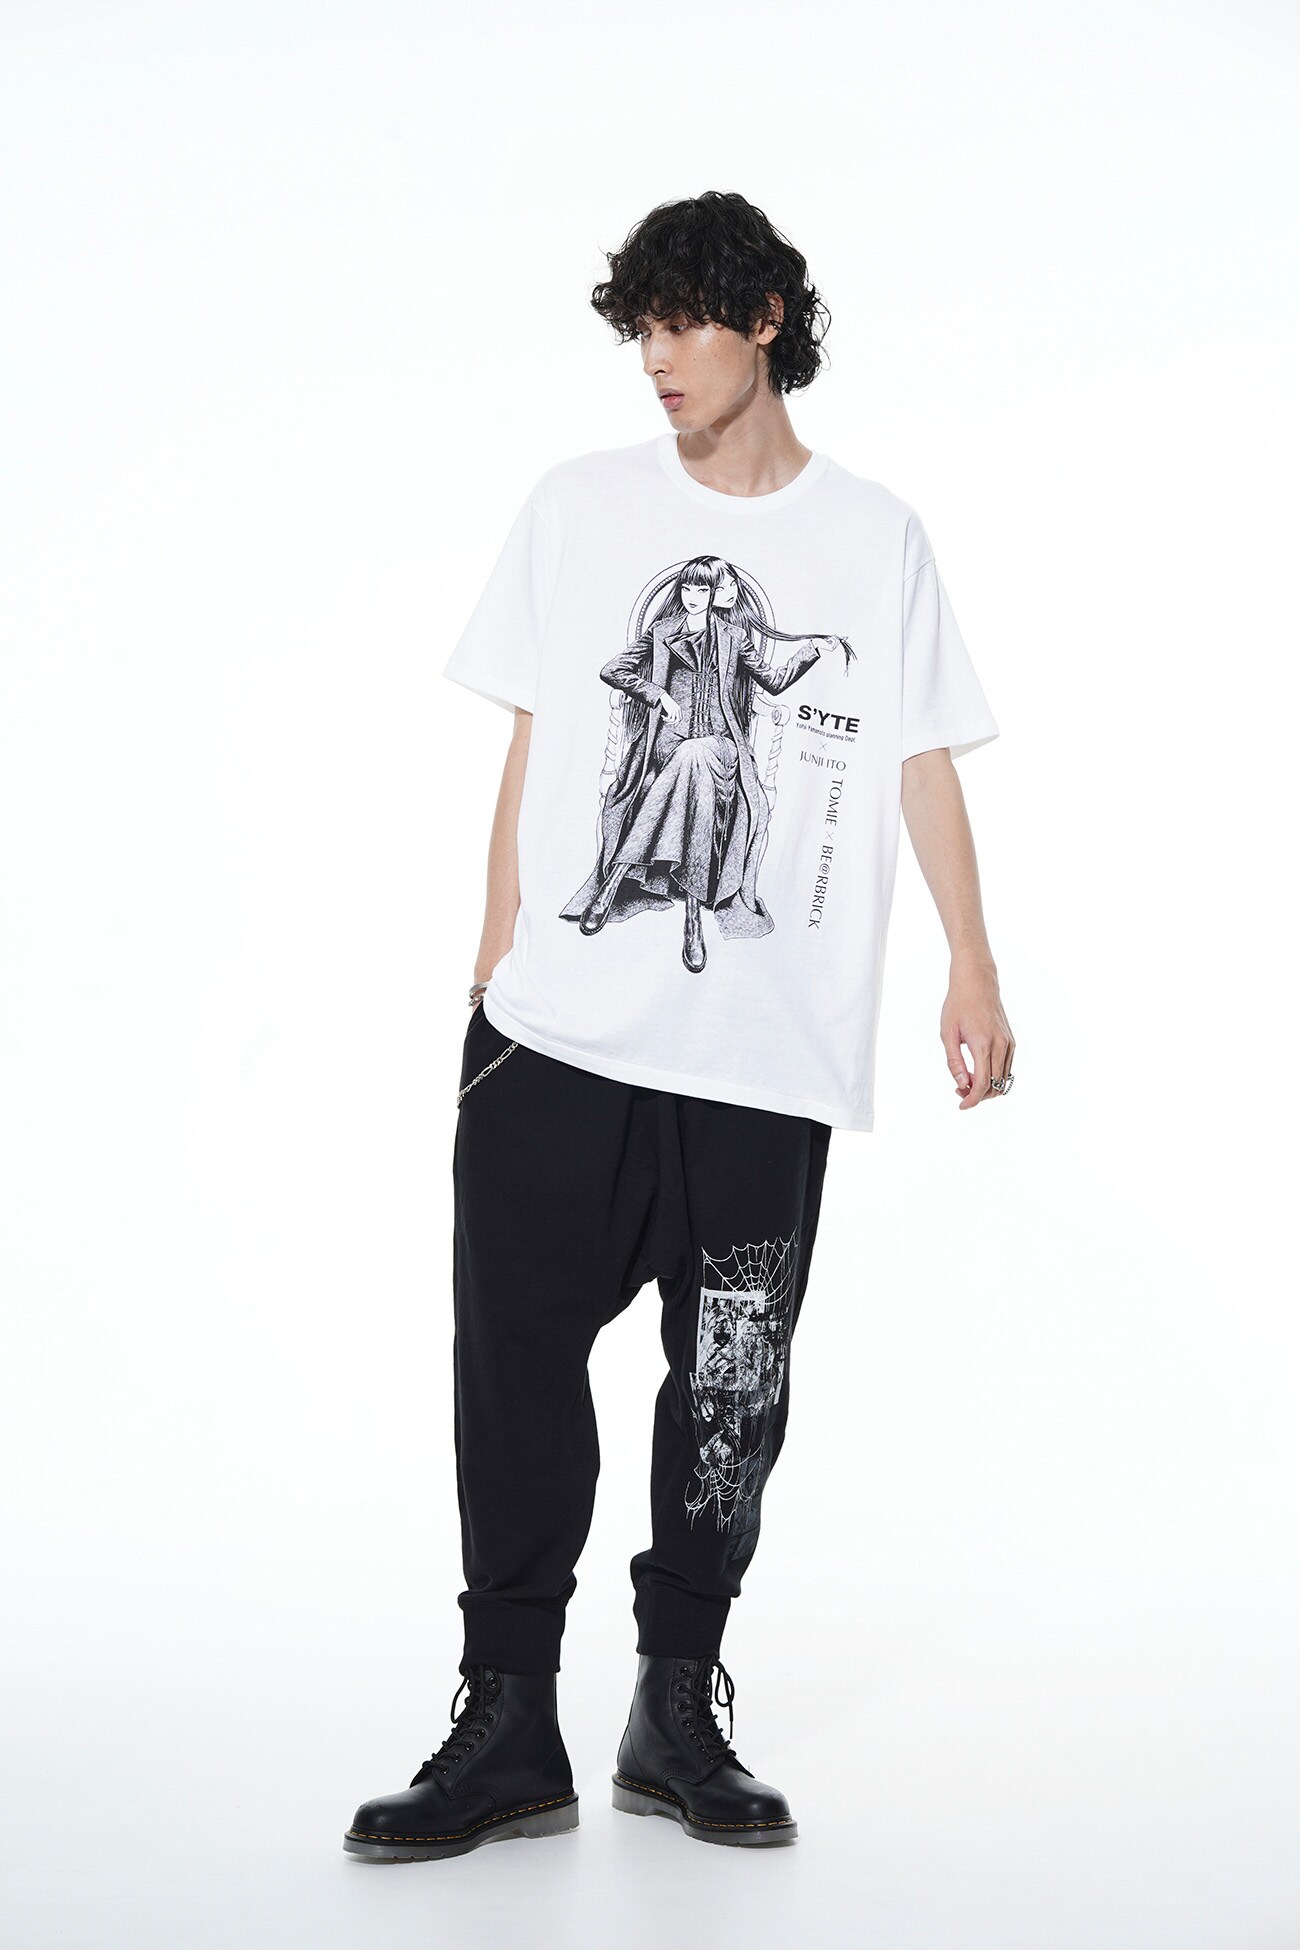 【9/1 12:00発売】BE@RBRICK × Junji ITO "Tomie" Wearing Yohji Yamamoto Lace-up Dress T-shirt